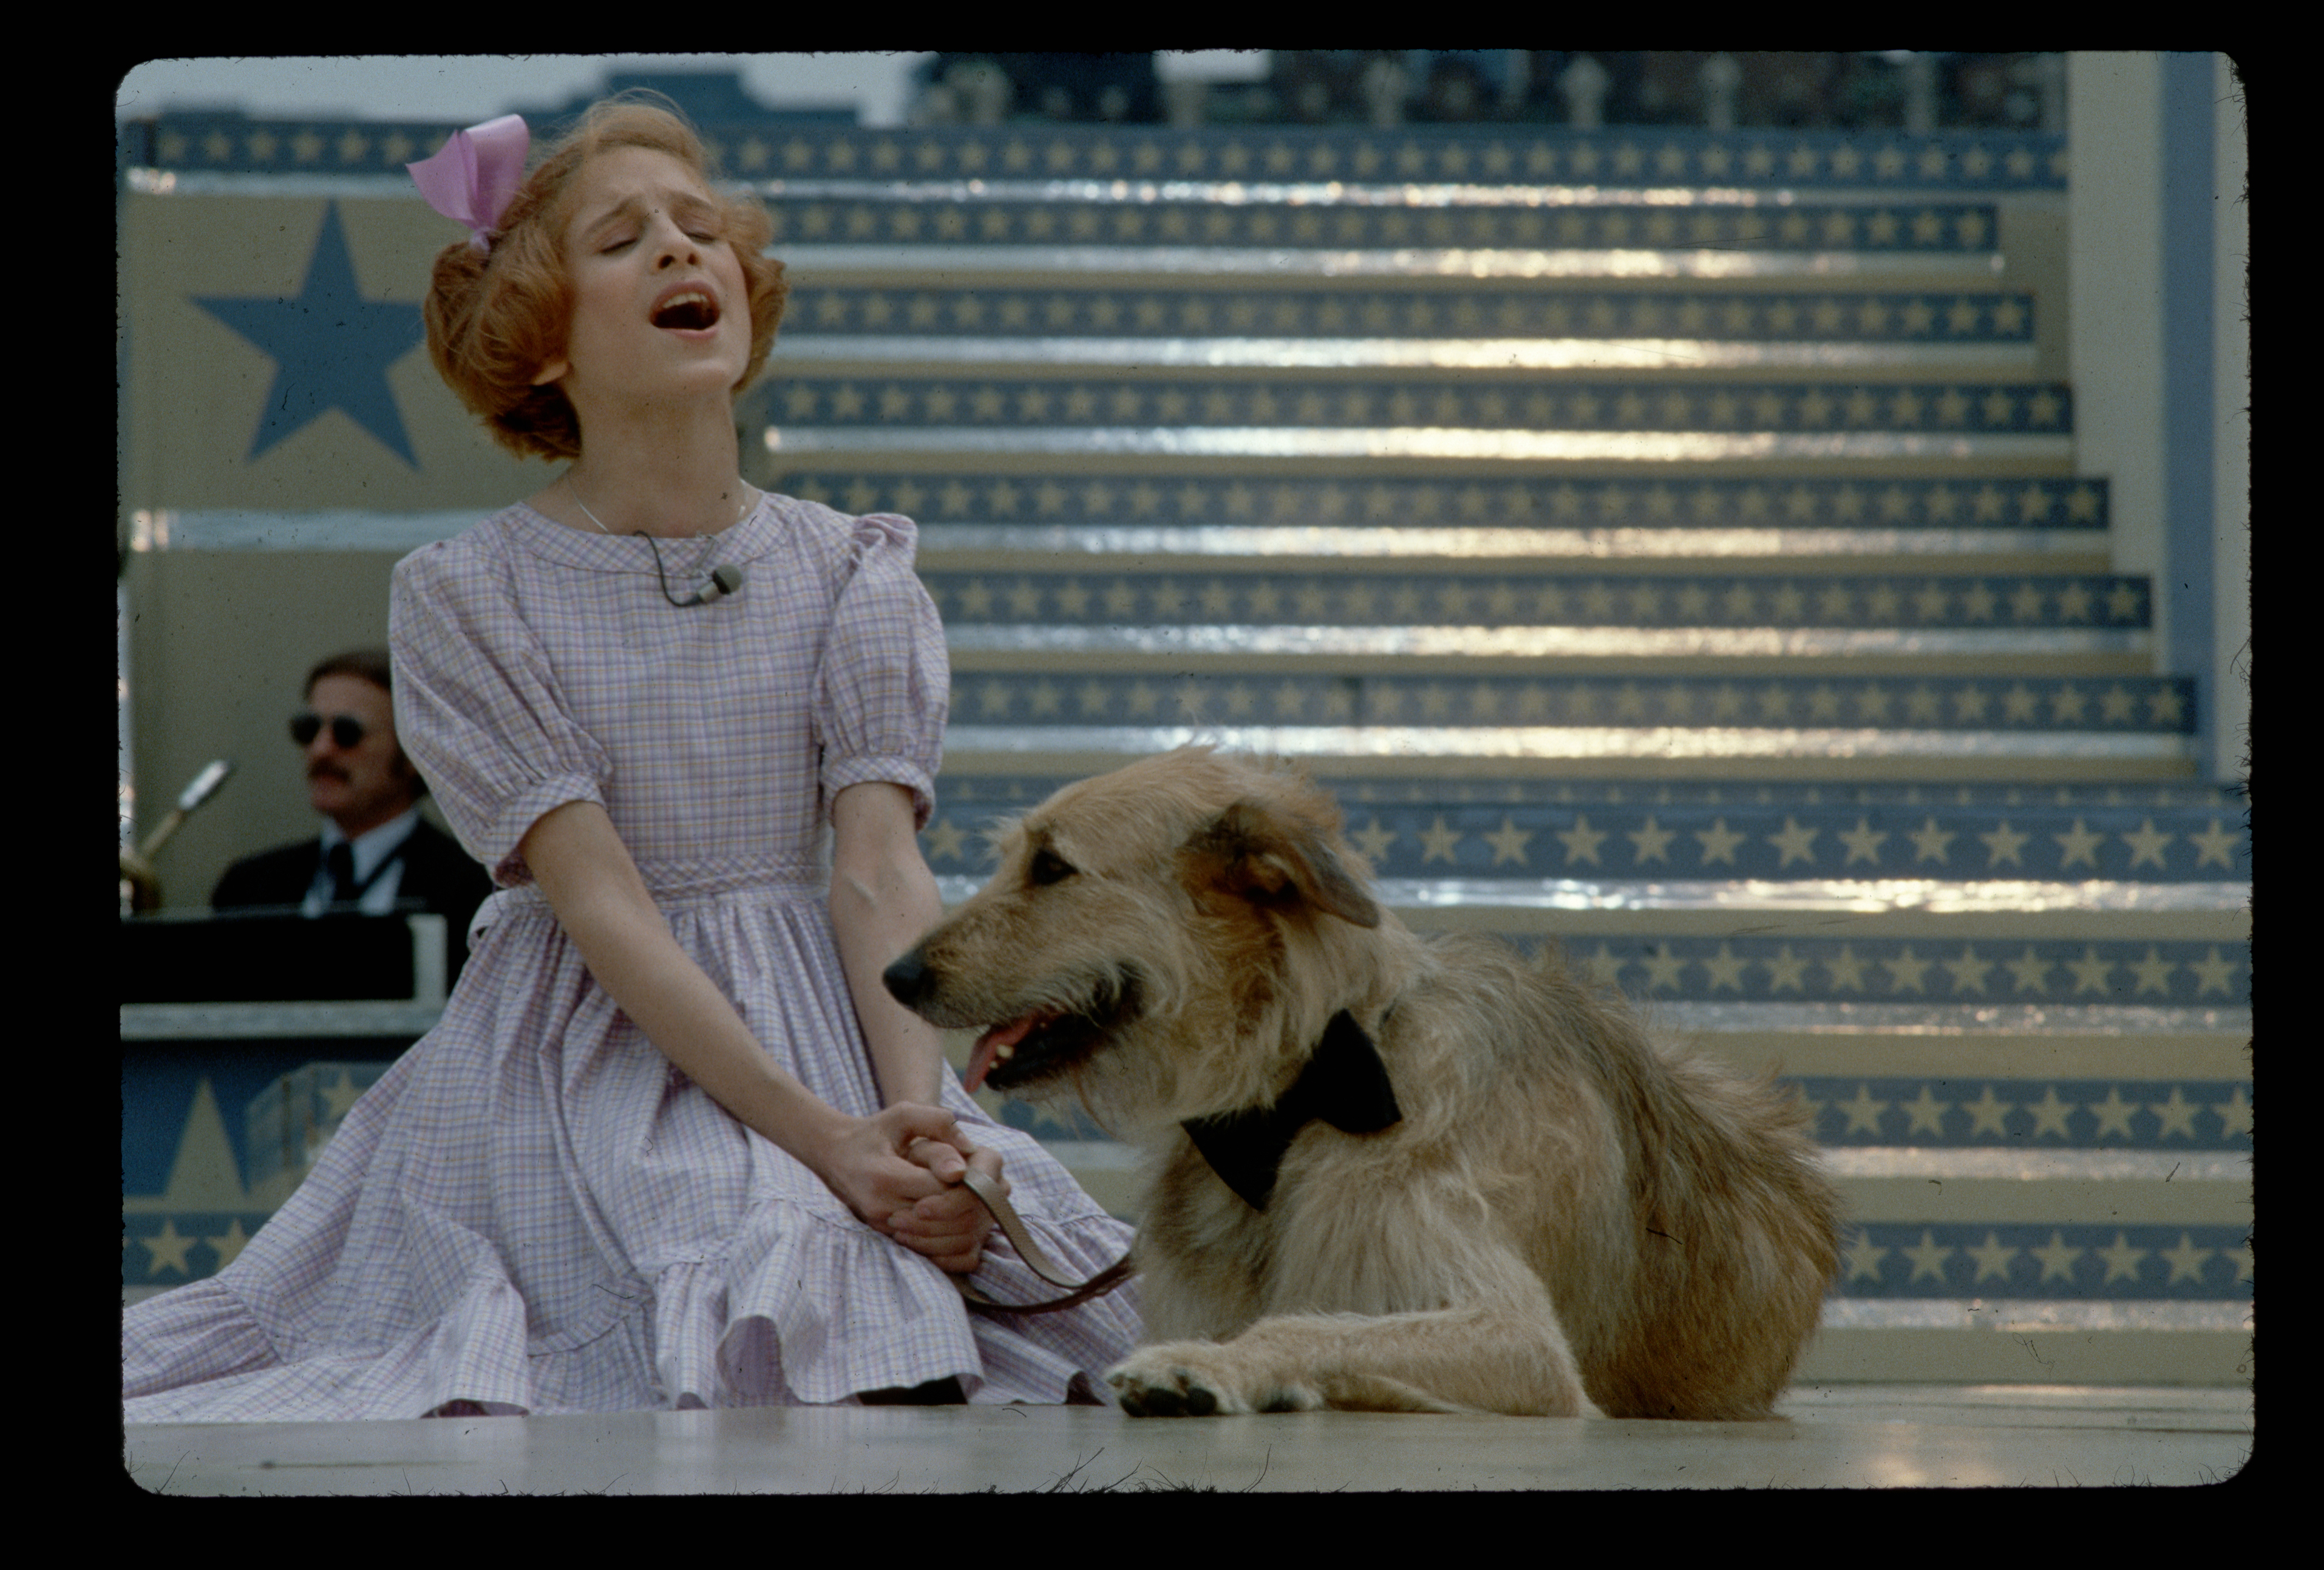 La actriz Sarah Jessica Parker interpreta una escena con un perro en el musical "Annie", el 1 de enero de 1979. | Foto: Getty Images